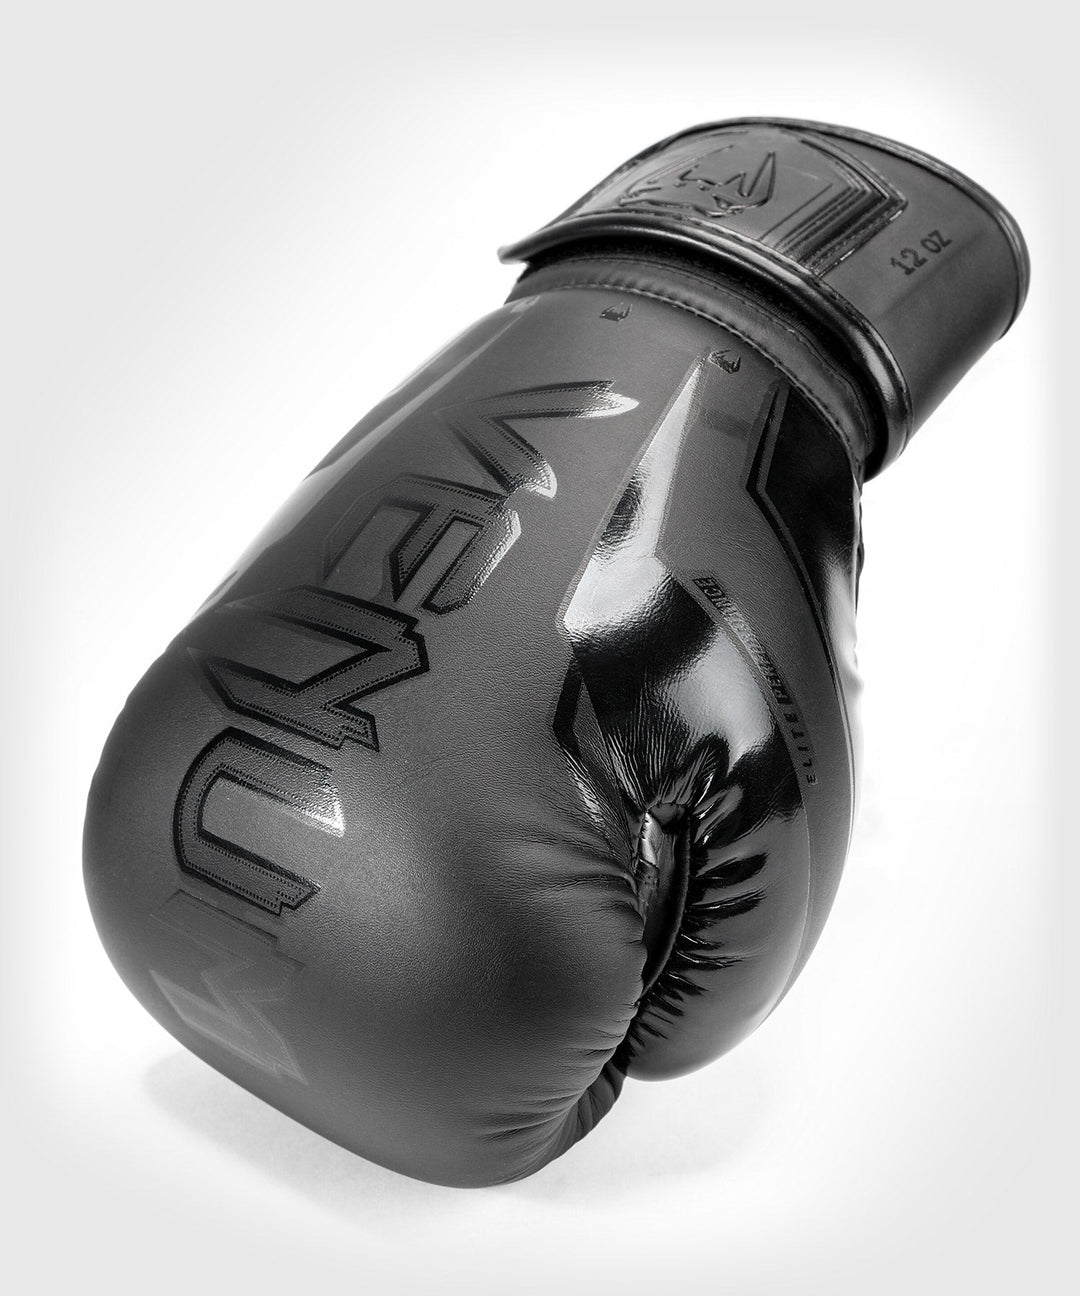 Venum Elite Evo 2 Boxing Gloves